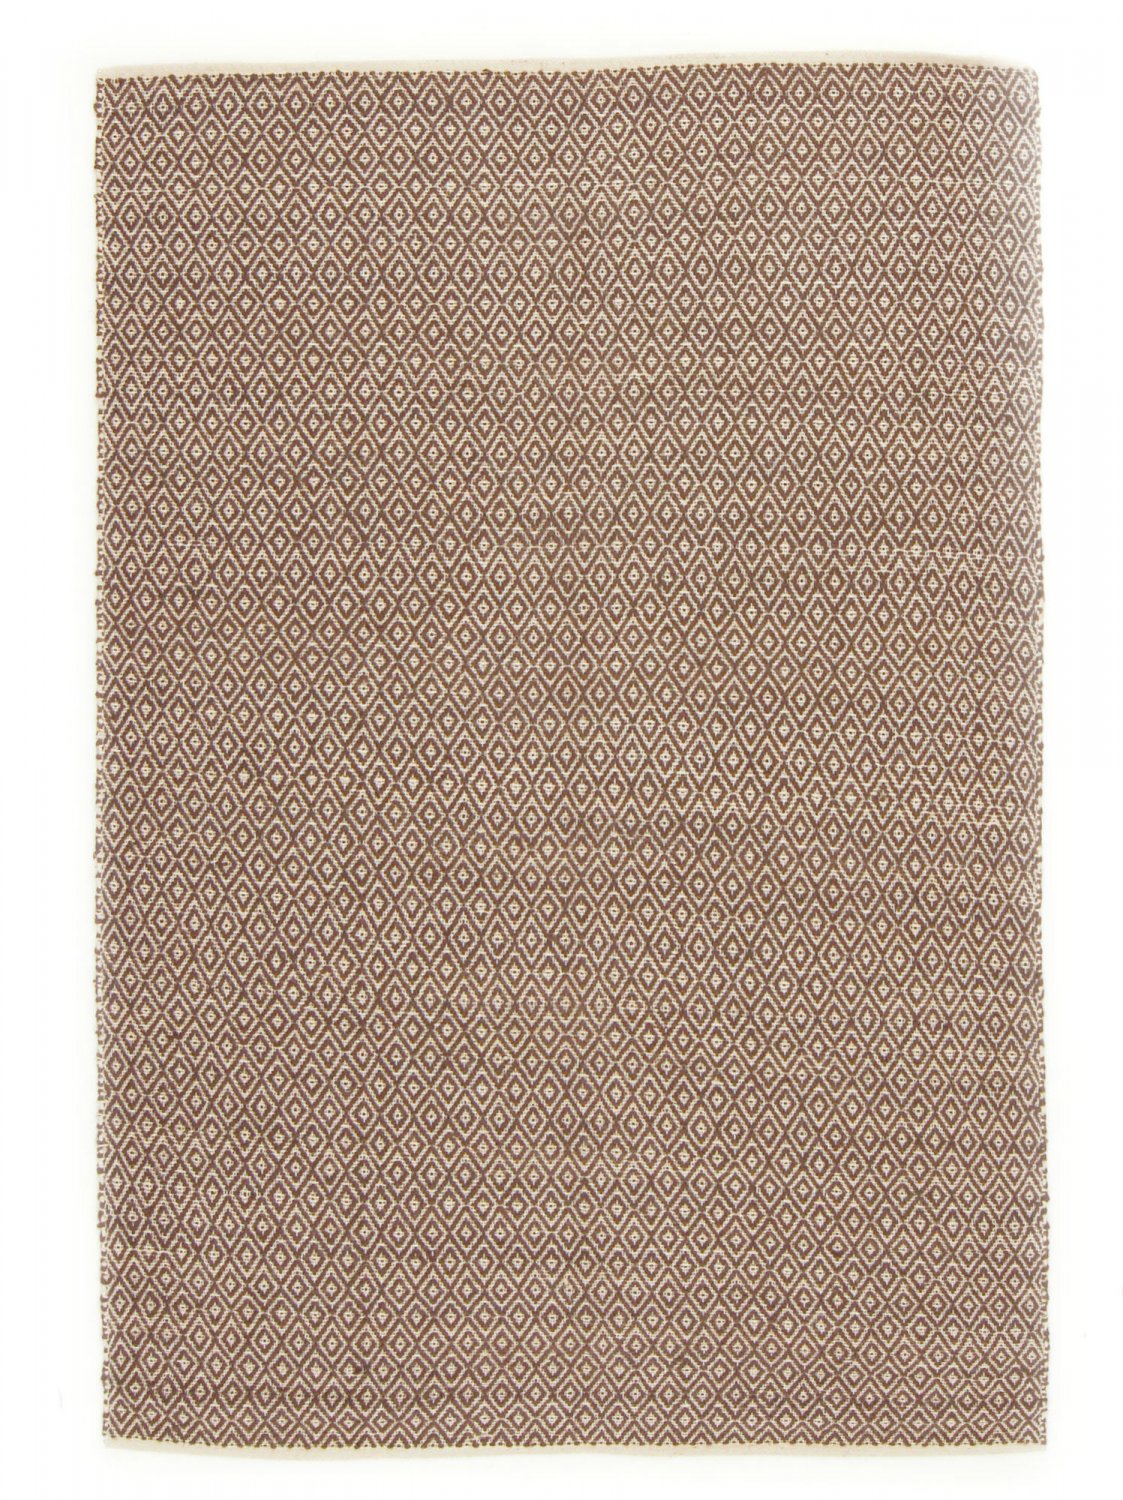 Dywany z juty - Puebla (beżowy/brązowy)